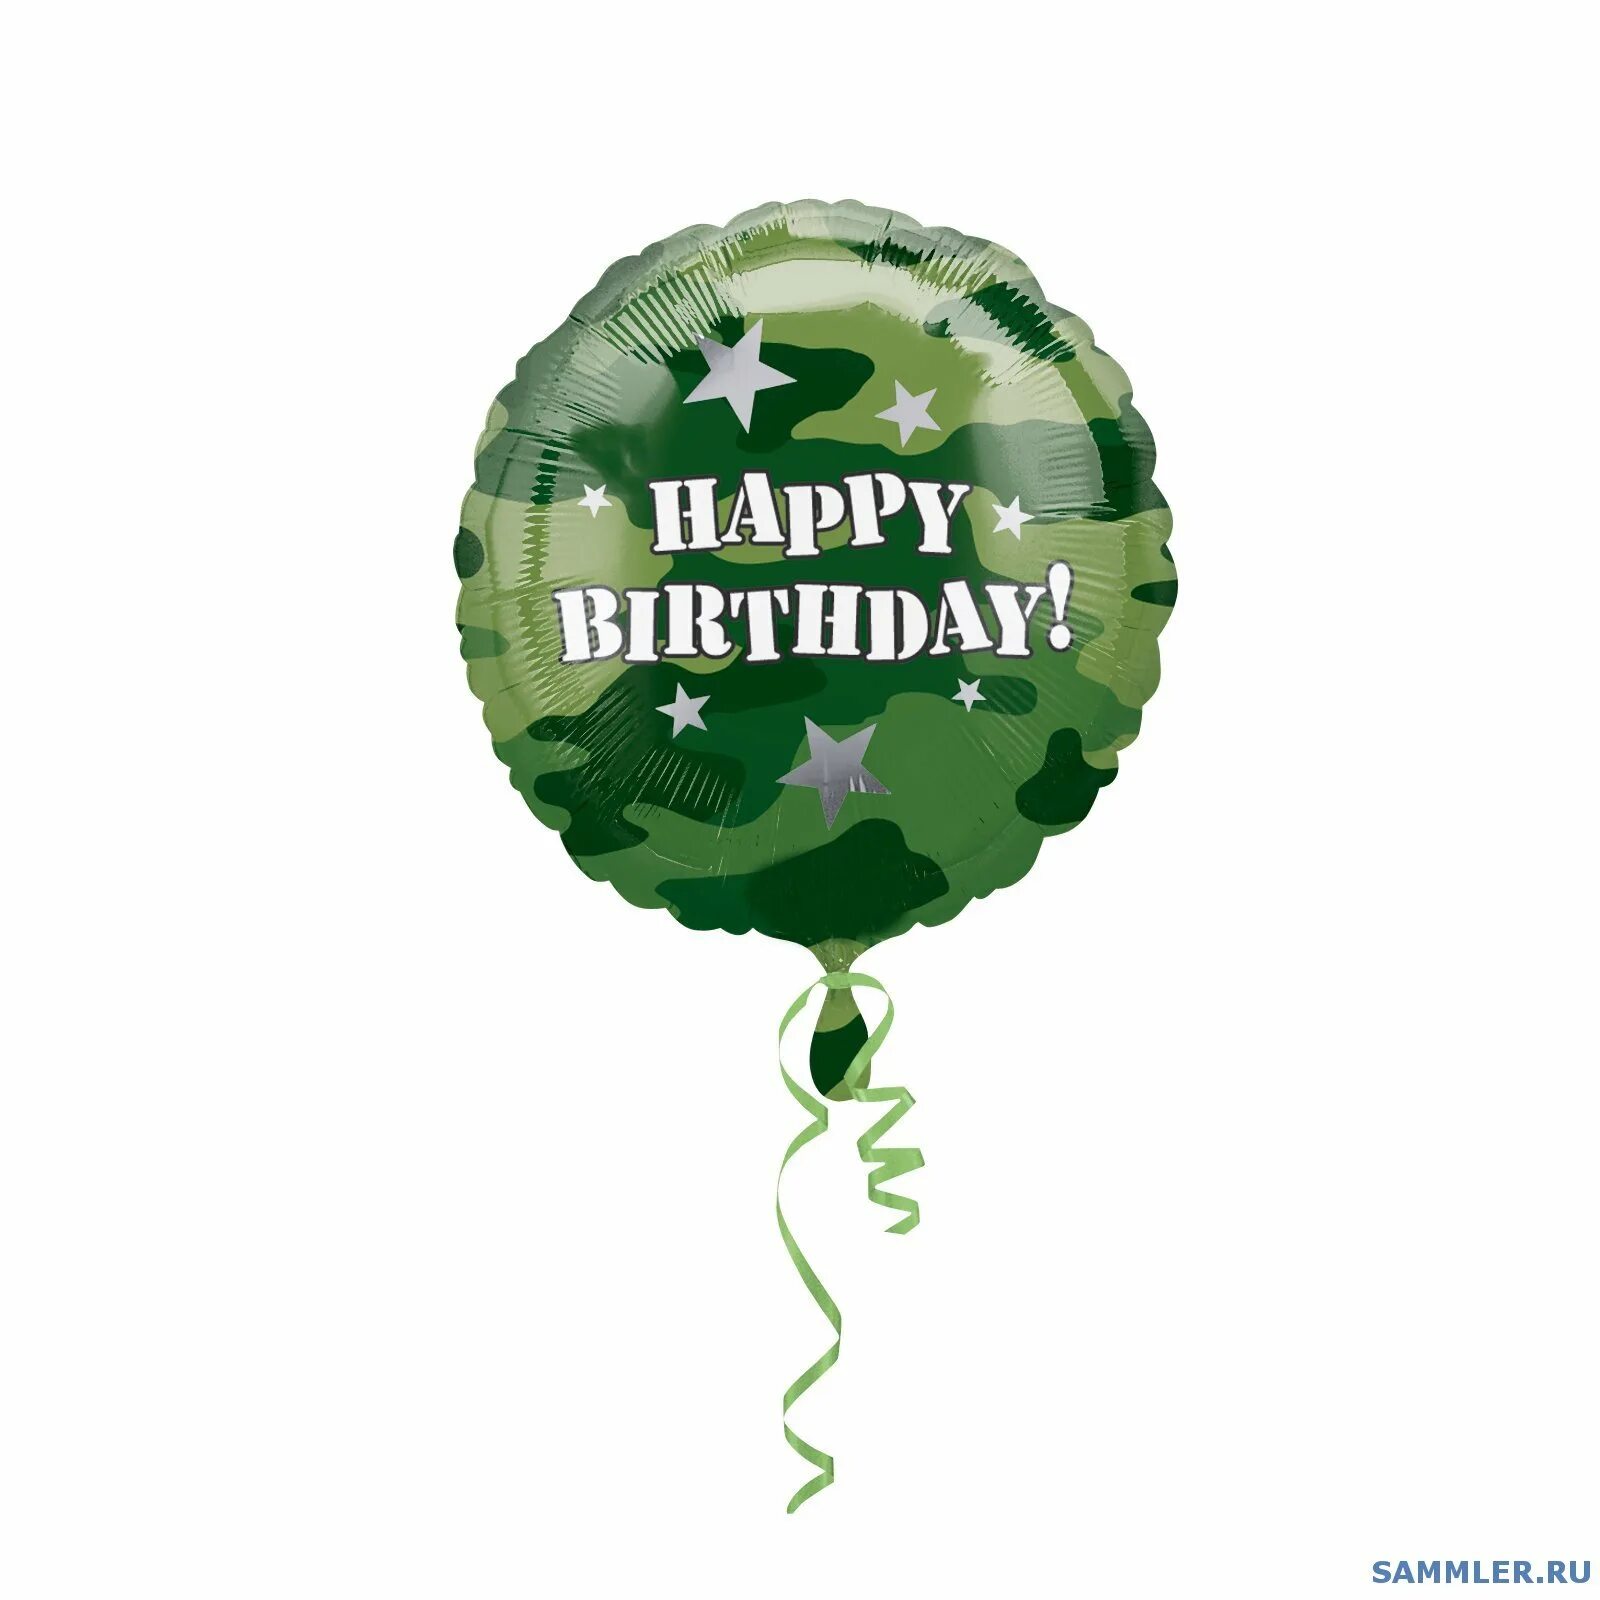 С днем рождения мужчине на войне. Поздравления с днём рождения военному. Открытки с днём рождения мужчине военному. С днём рождения солдату в армию. ДС днем рождения мужчине военноиу.